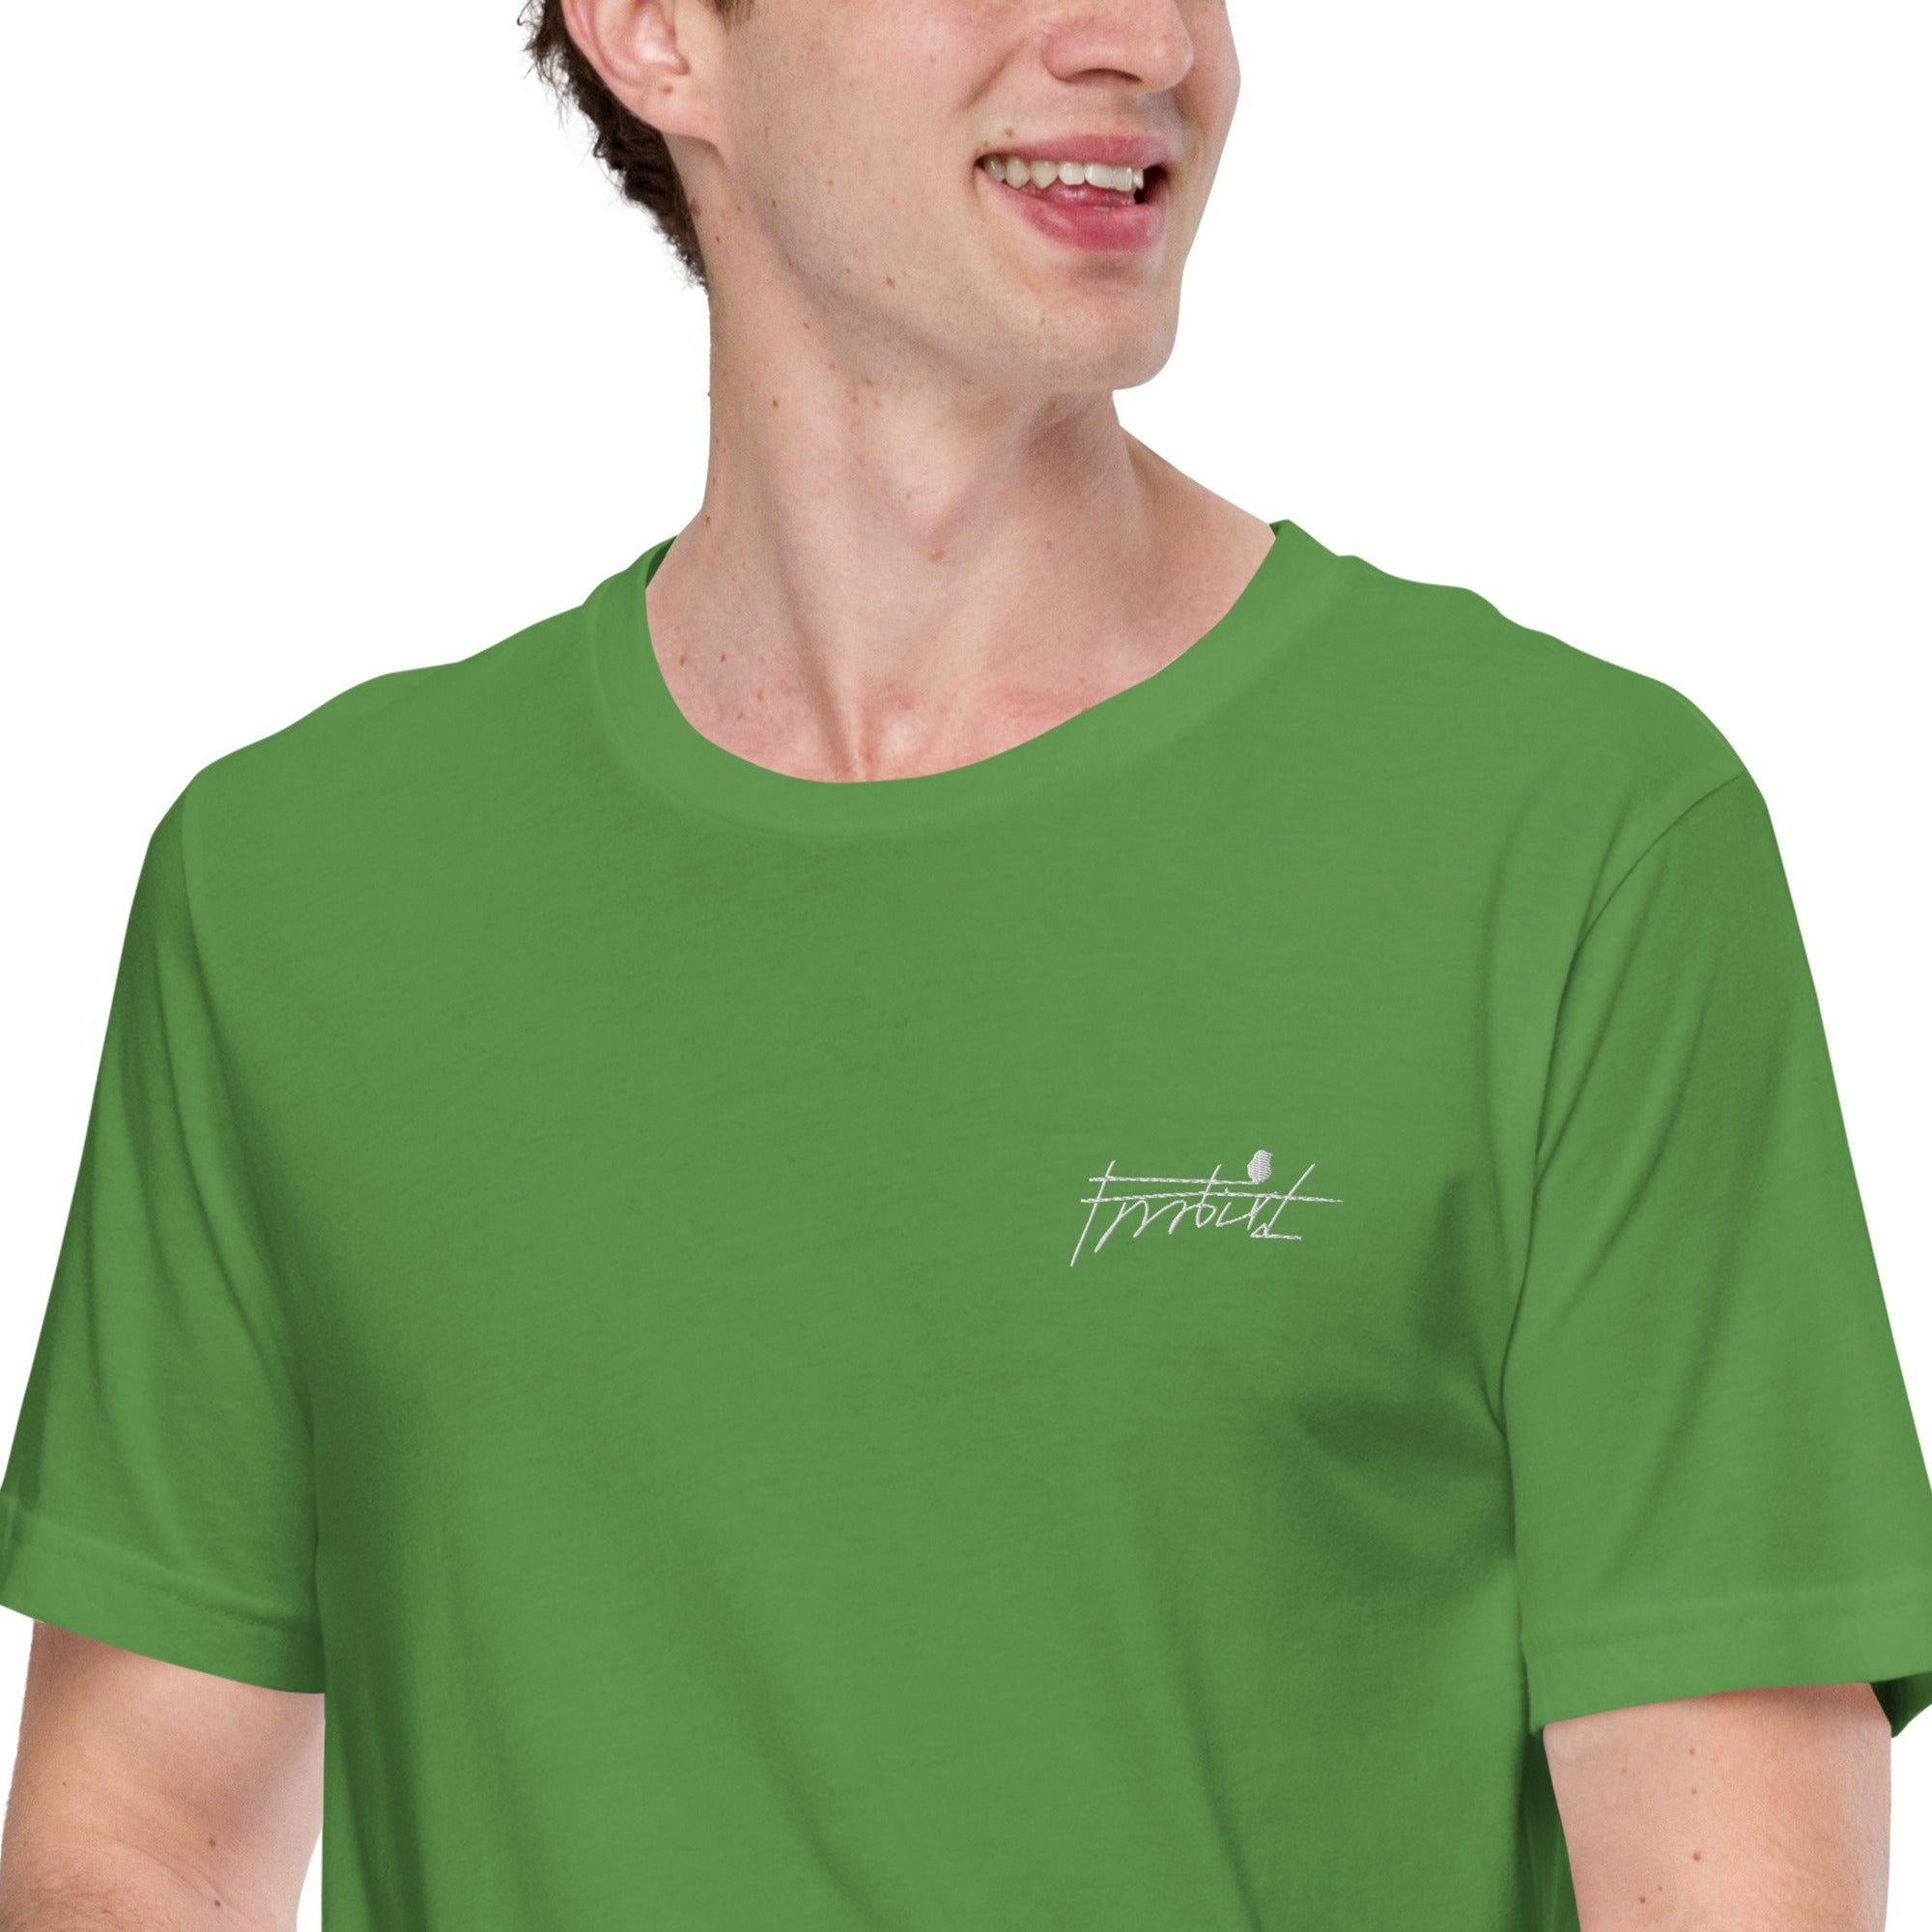 “Frrrbird”-Unisex t-shirt